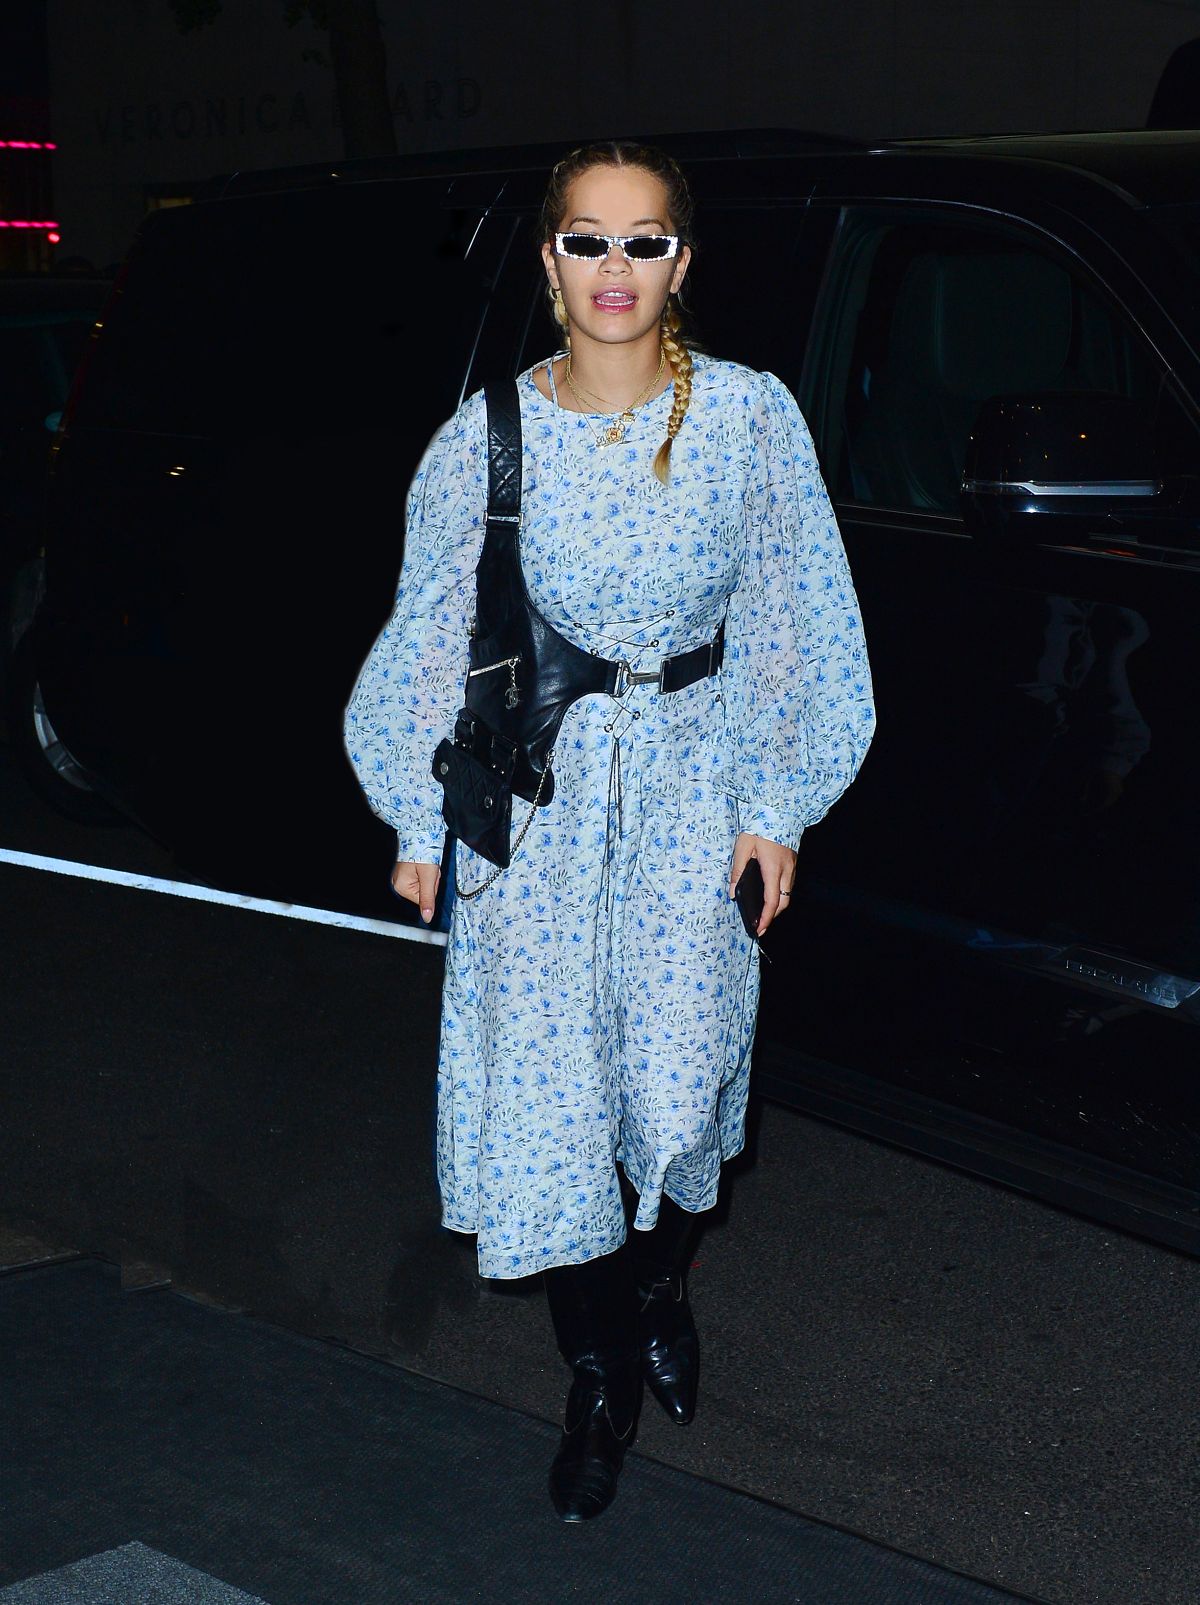 Rita Ora At Jfk Airport In New York 05 09 2018 Hawtcelebs